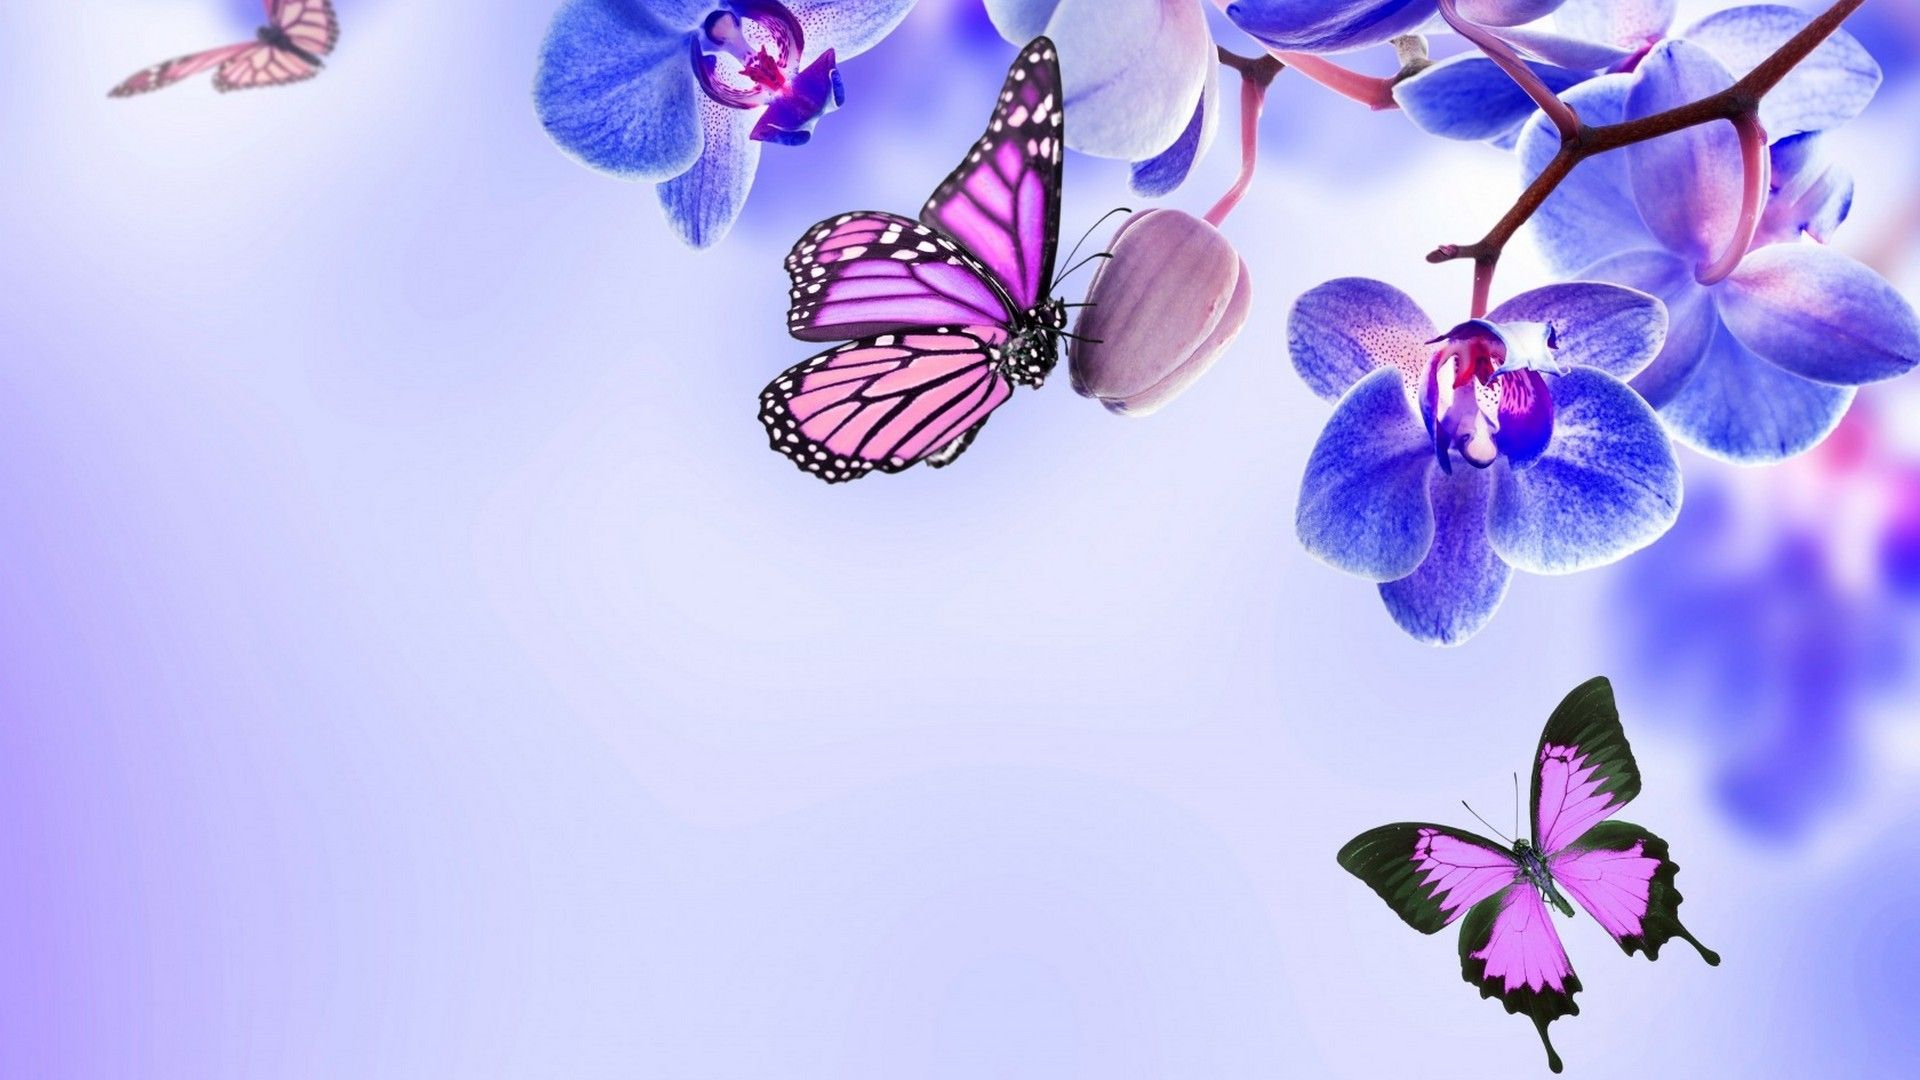 1920x1080 Purple Butterfly Desktop Wallpapers Top Free Purple Butterfly Desktop Backgrounds